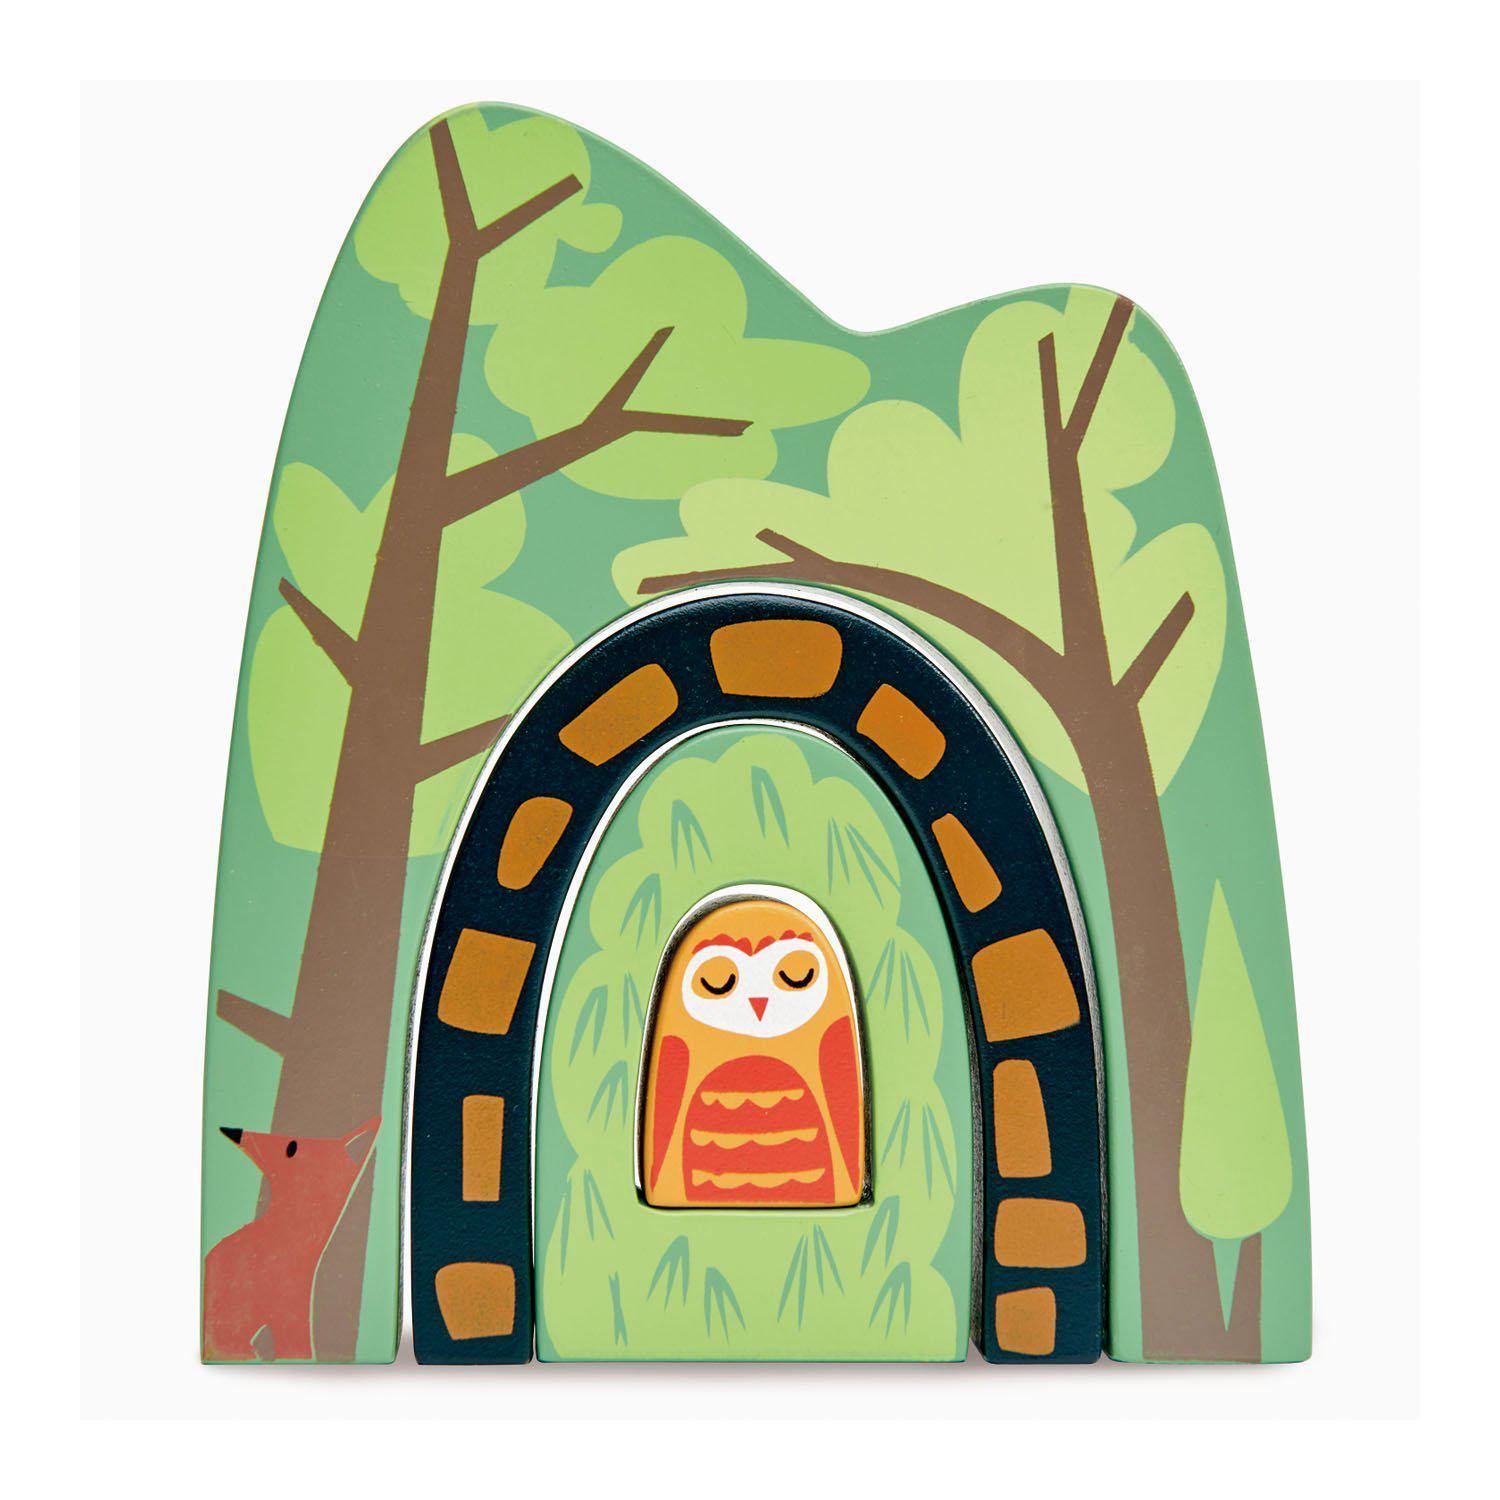 Erdei alagút, prémium minőségű fából - Forest Tunnels - Tender Leaf Toys-Tender Leaf Toys-2-Játszma.ro - A maradandó élmények boltja